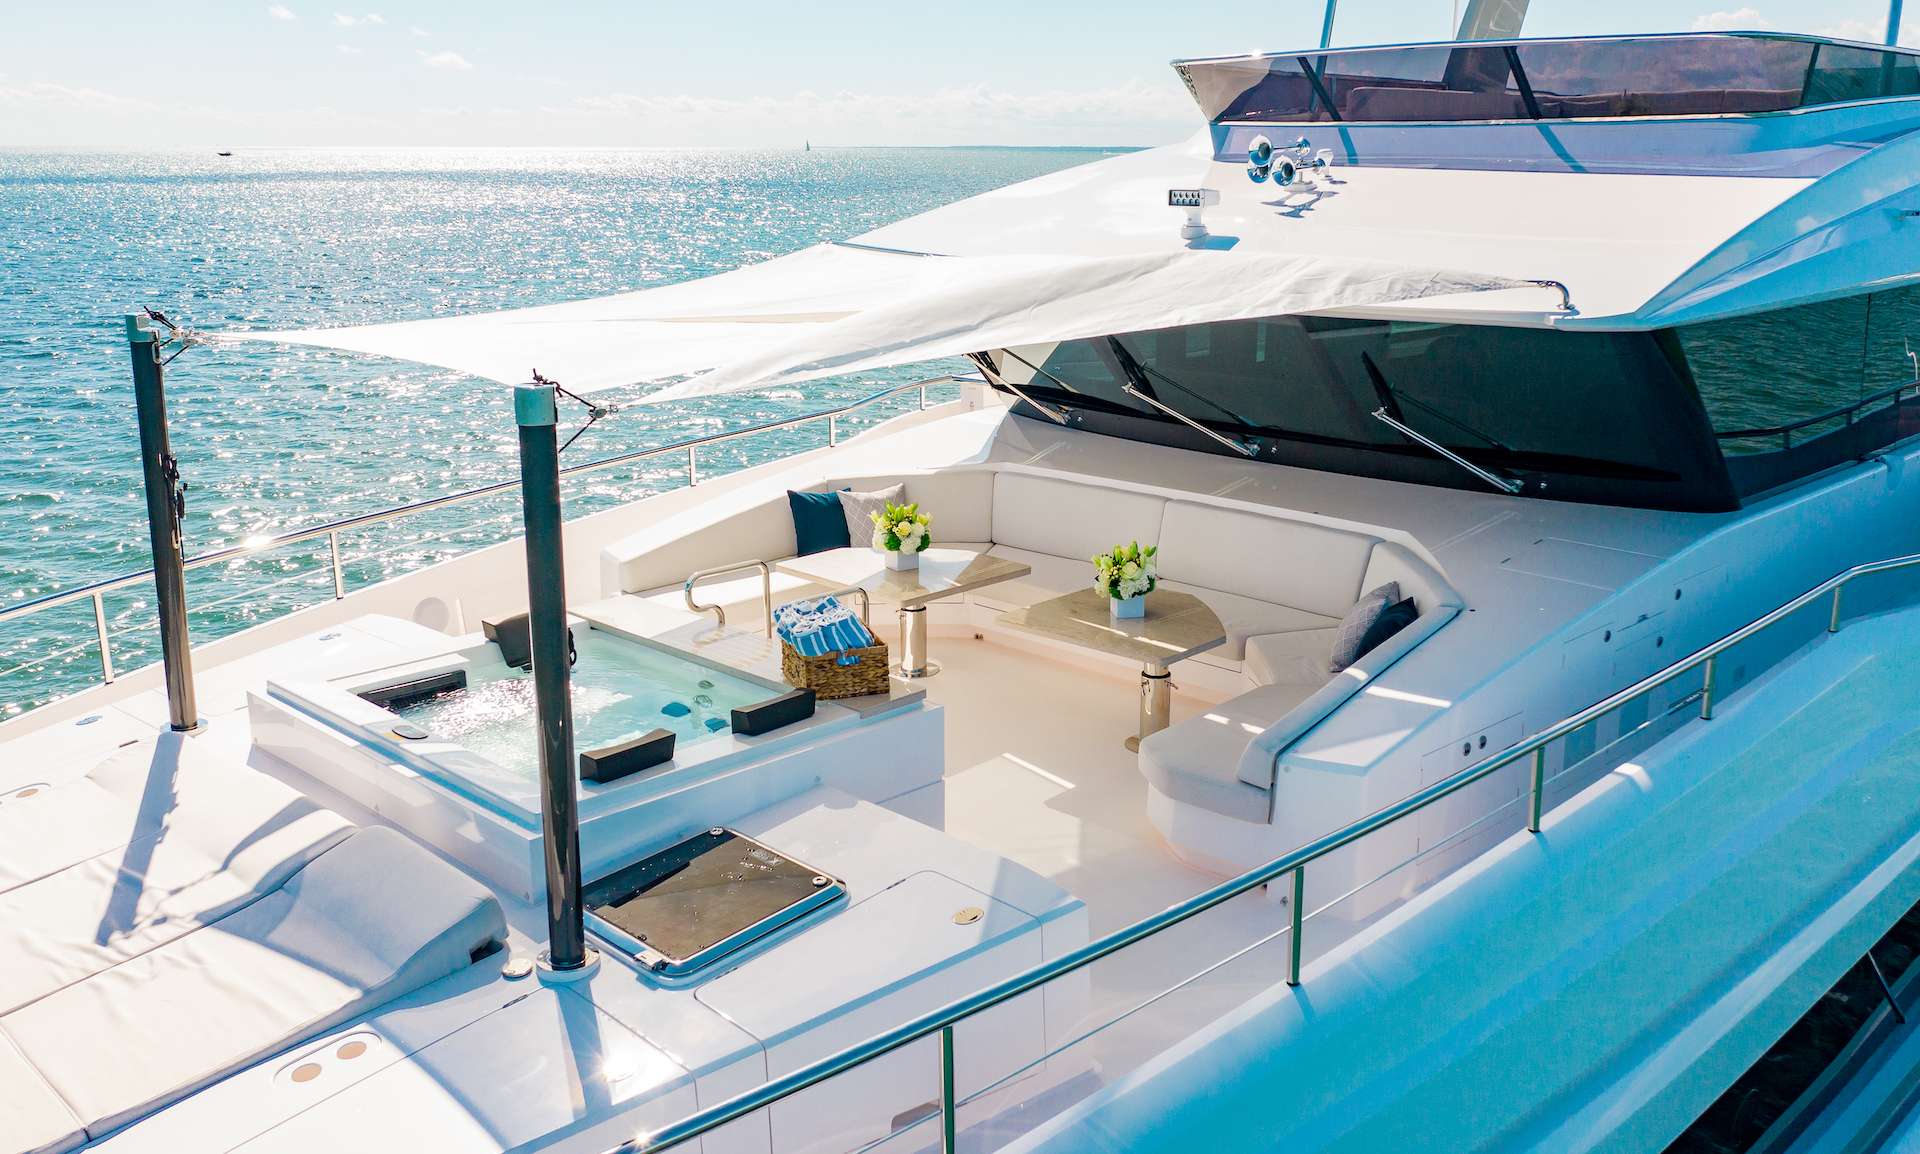 Horizon 110 - Luxury yacht charter Bahamas & Boat hire in Bahamas New Providence Nassau Palm Cay One Marina 5